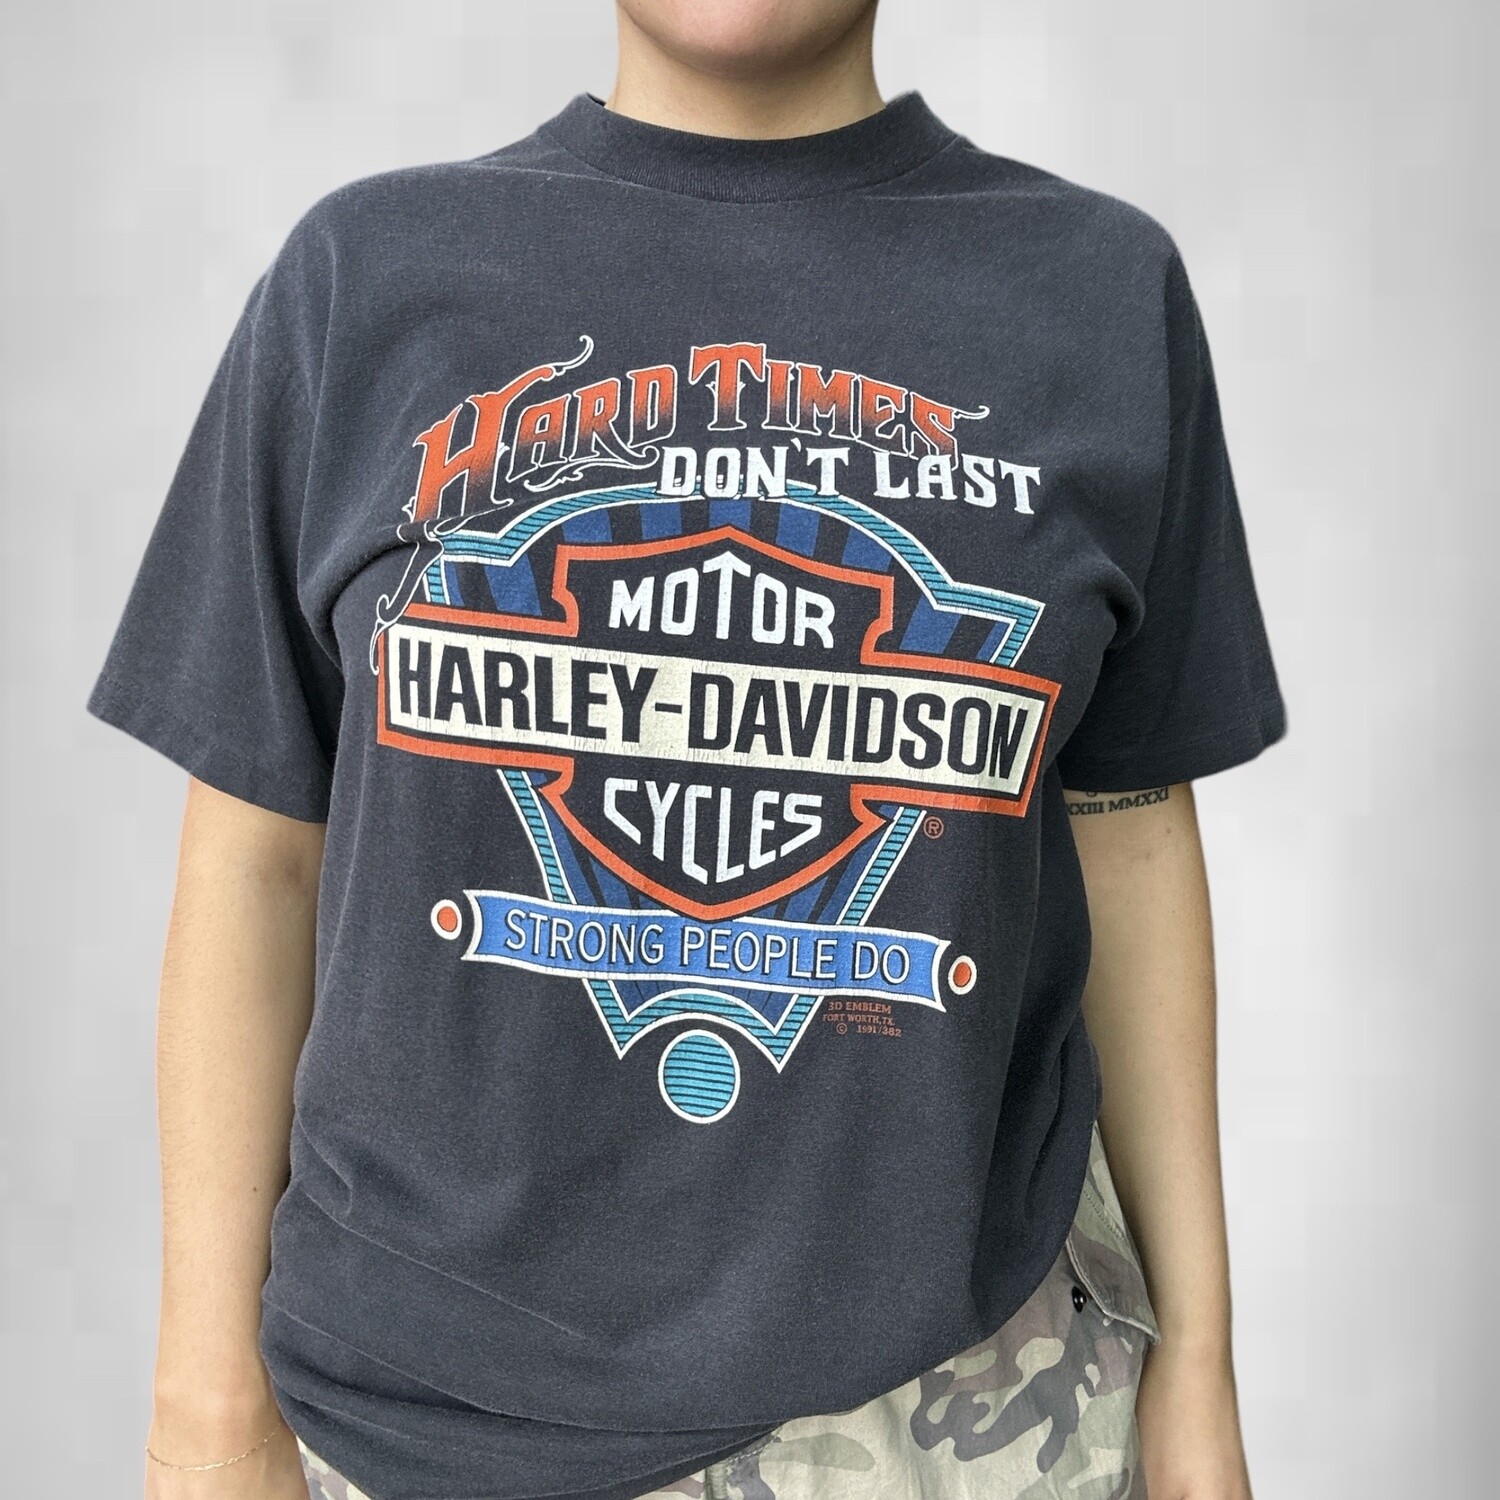 Vintage Harley Davidson 3D Emblem Strong People Tee, Size: Large, Color: Black, Style: Harley